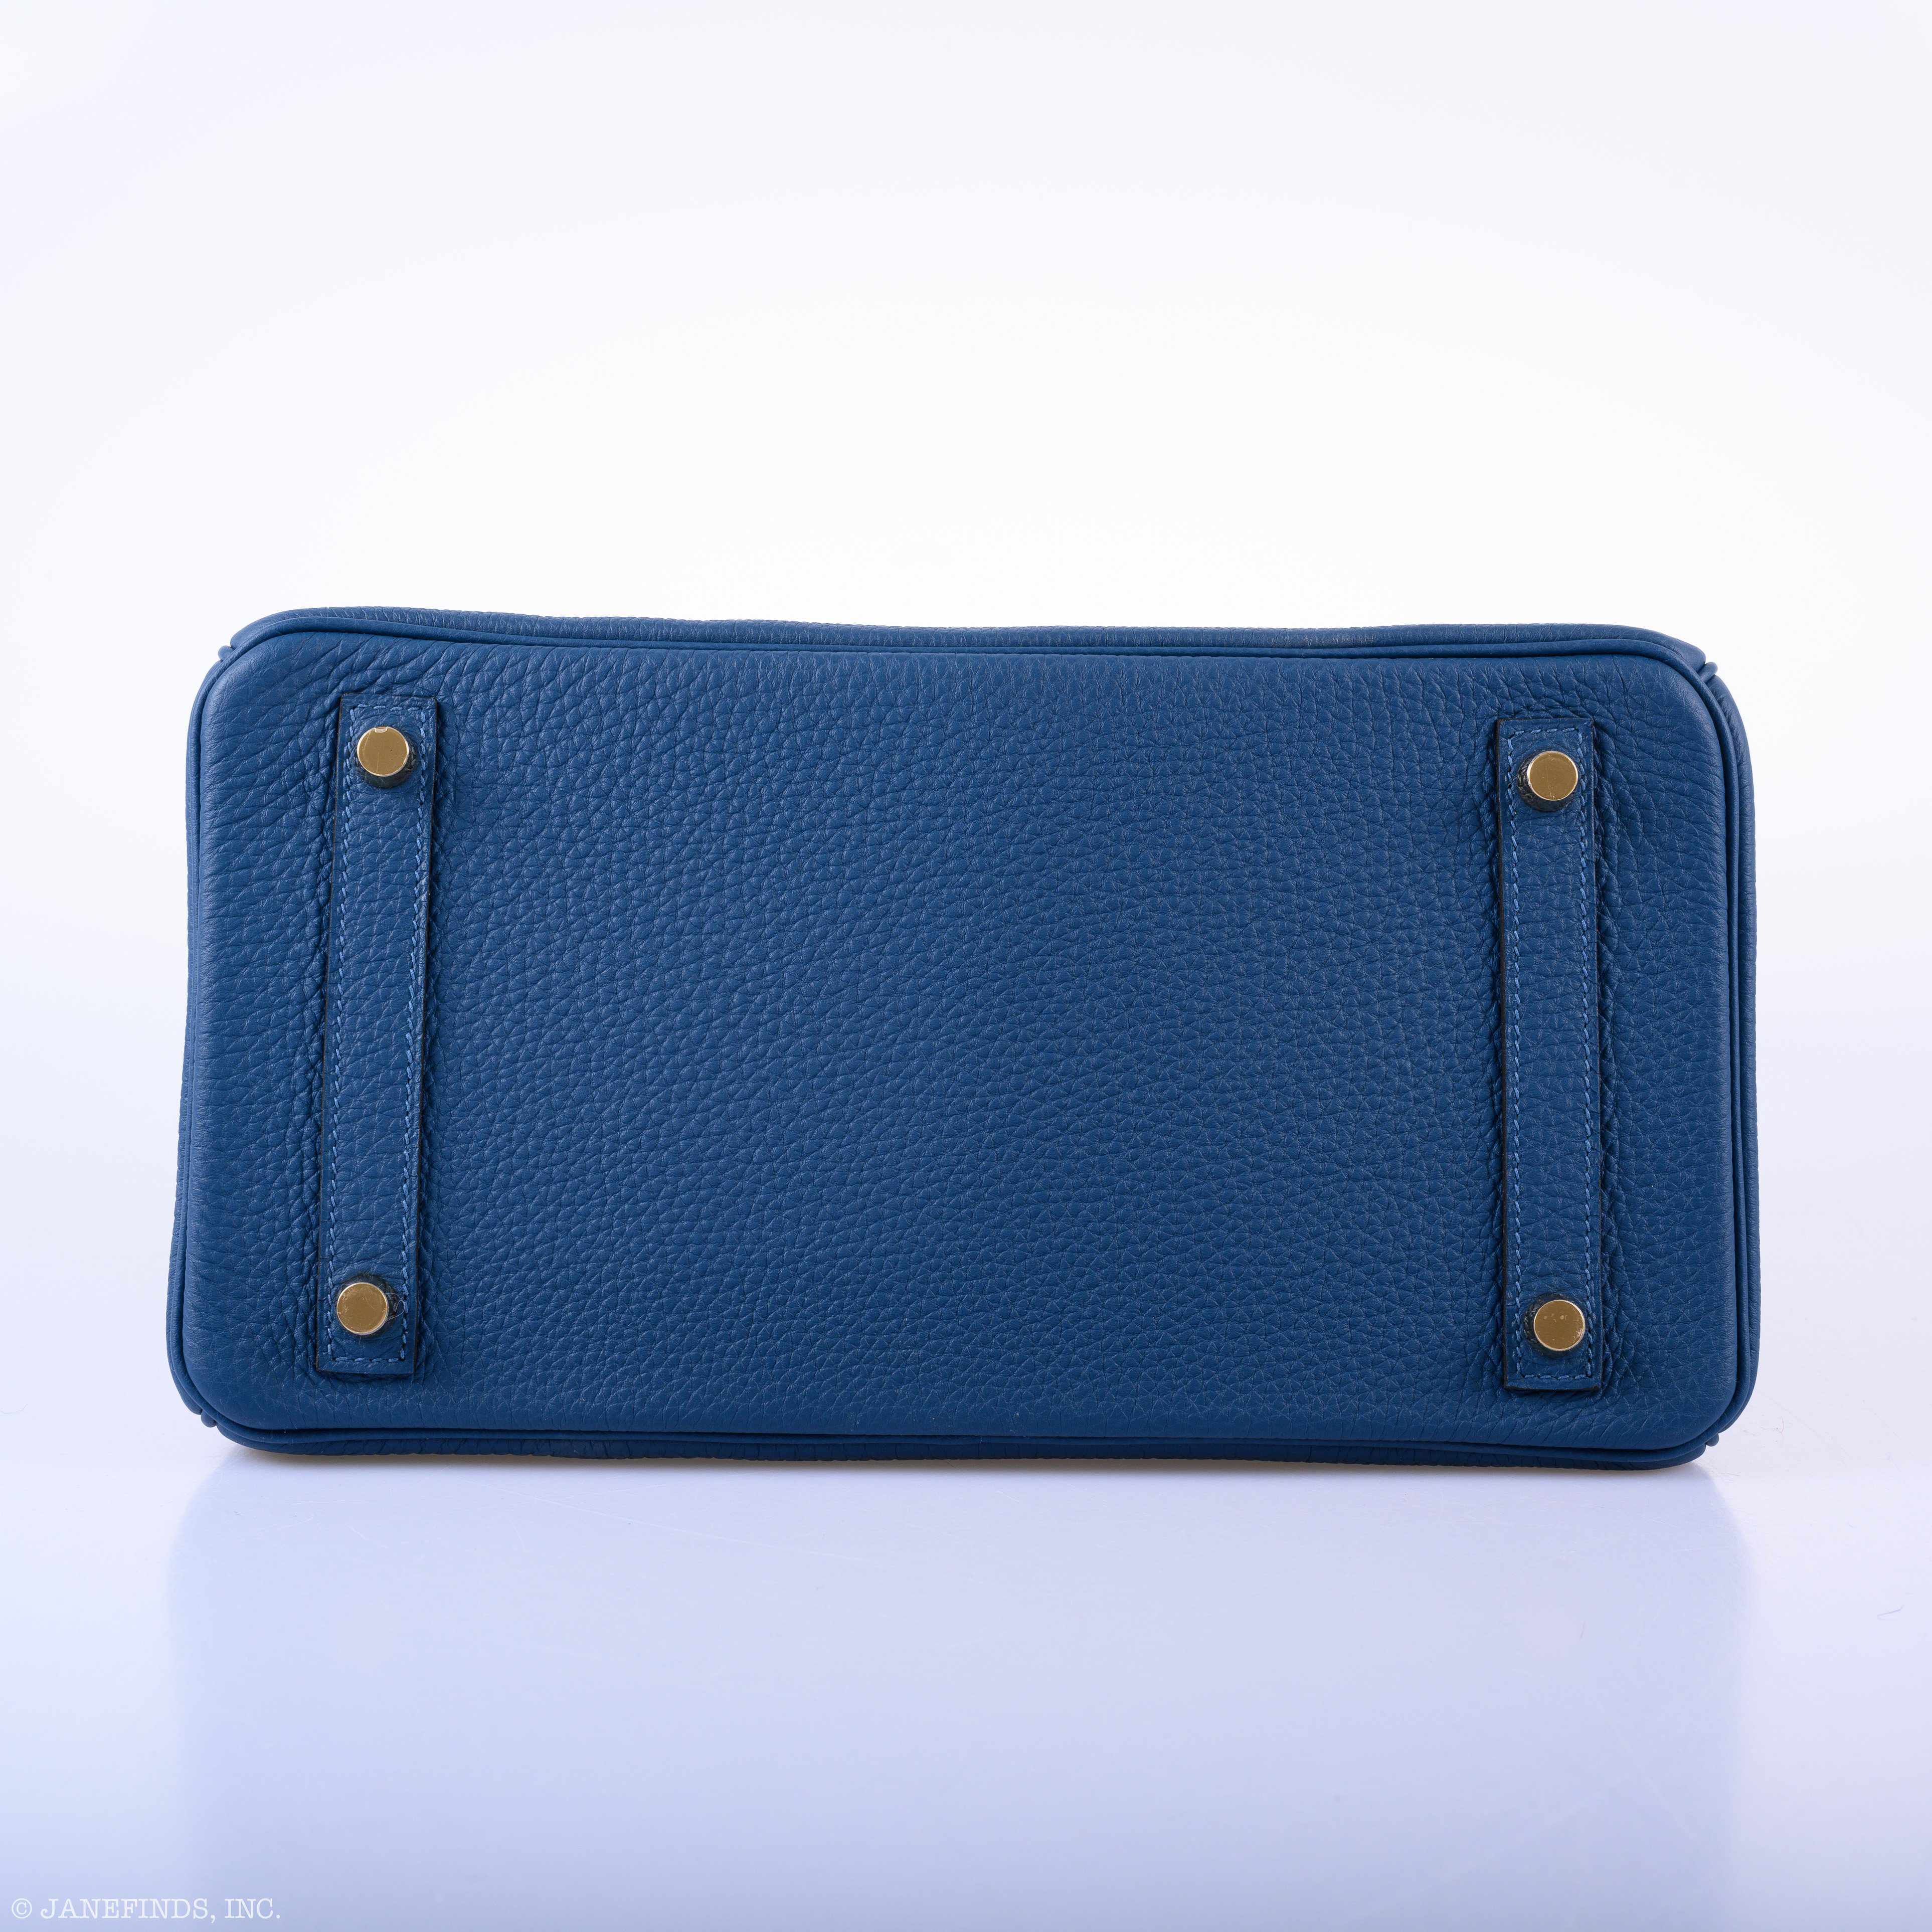 Hermès Birkin 30 Deep Blue Togo Gold Hardware - 2019